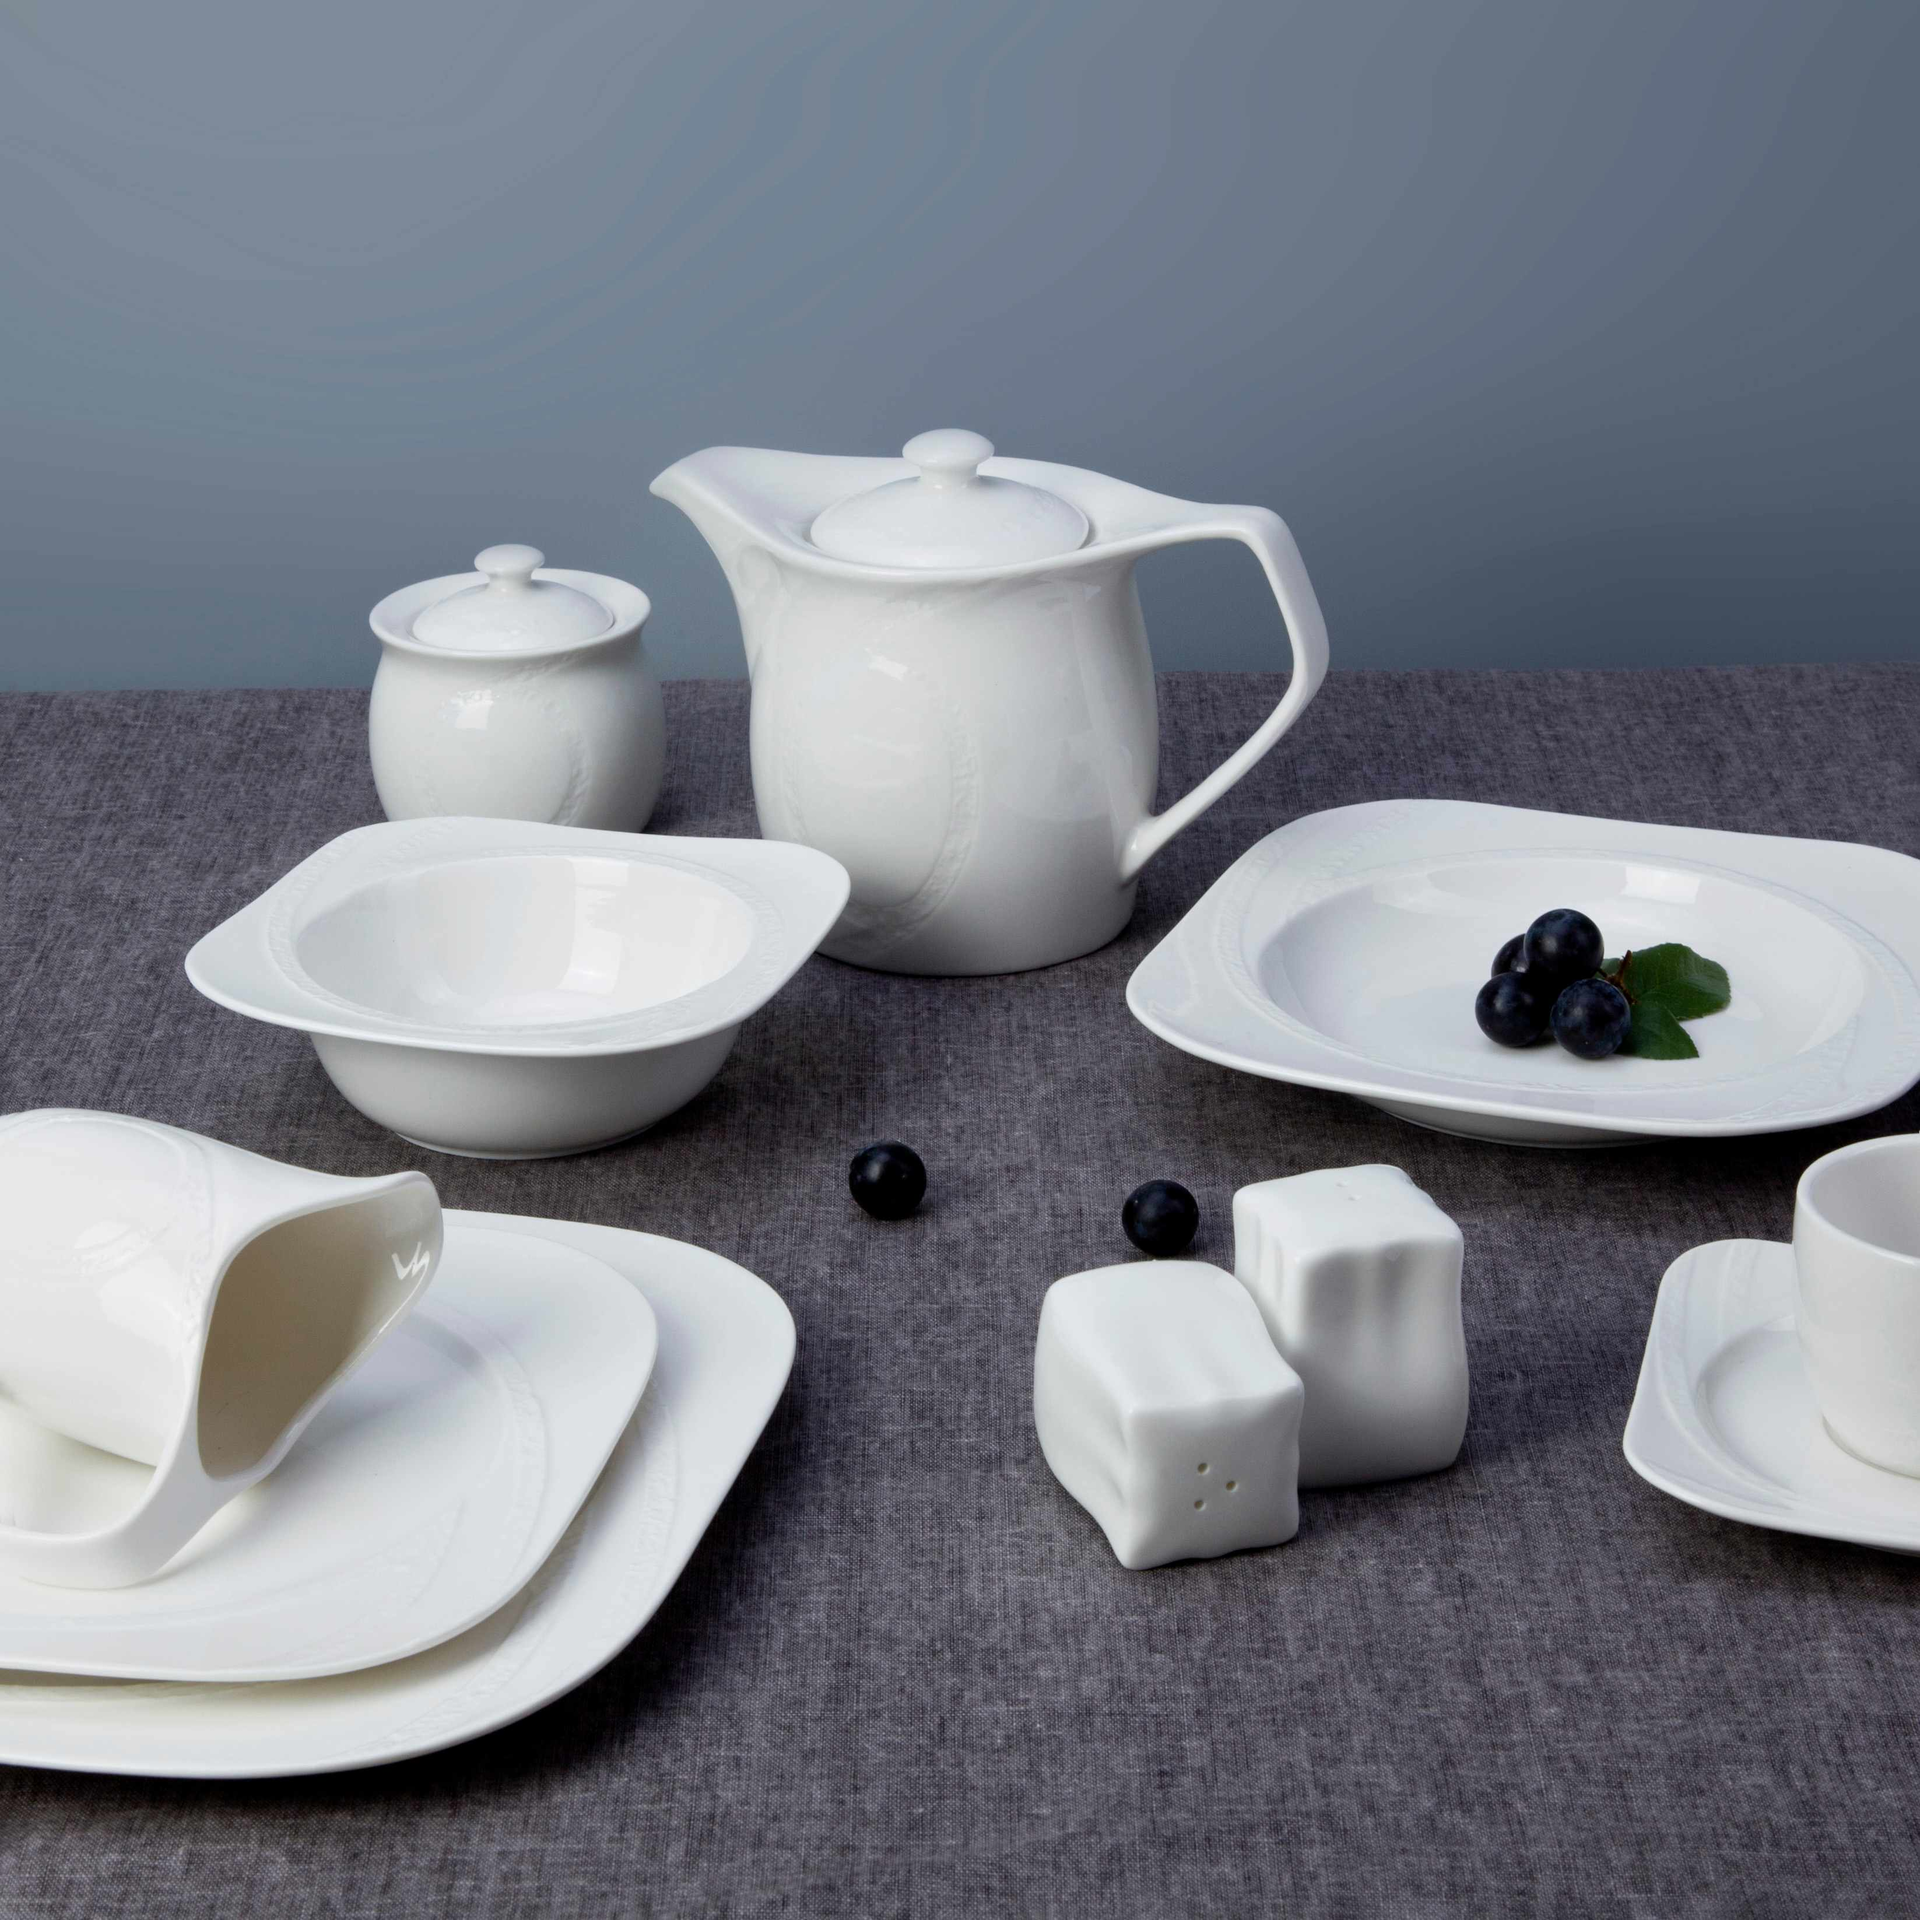 9 Piece Simply white ceramic dinnerware set - TW20